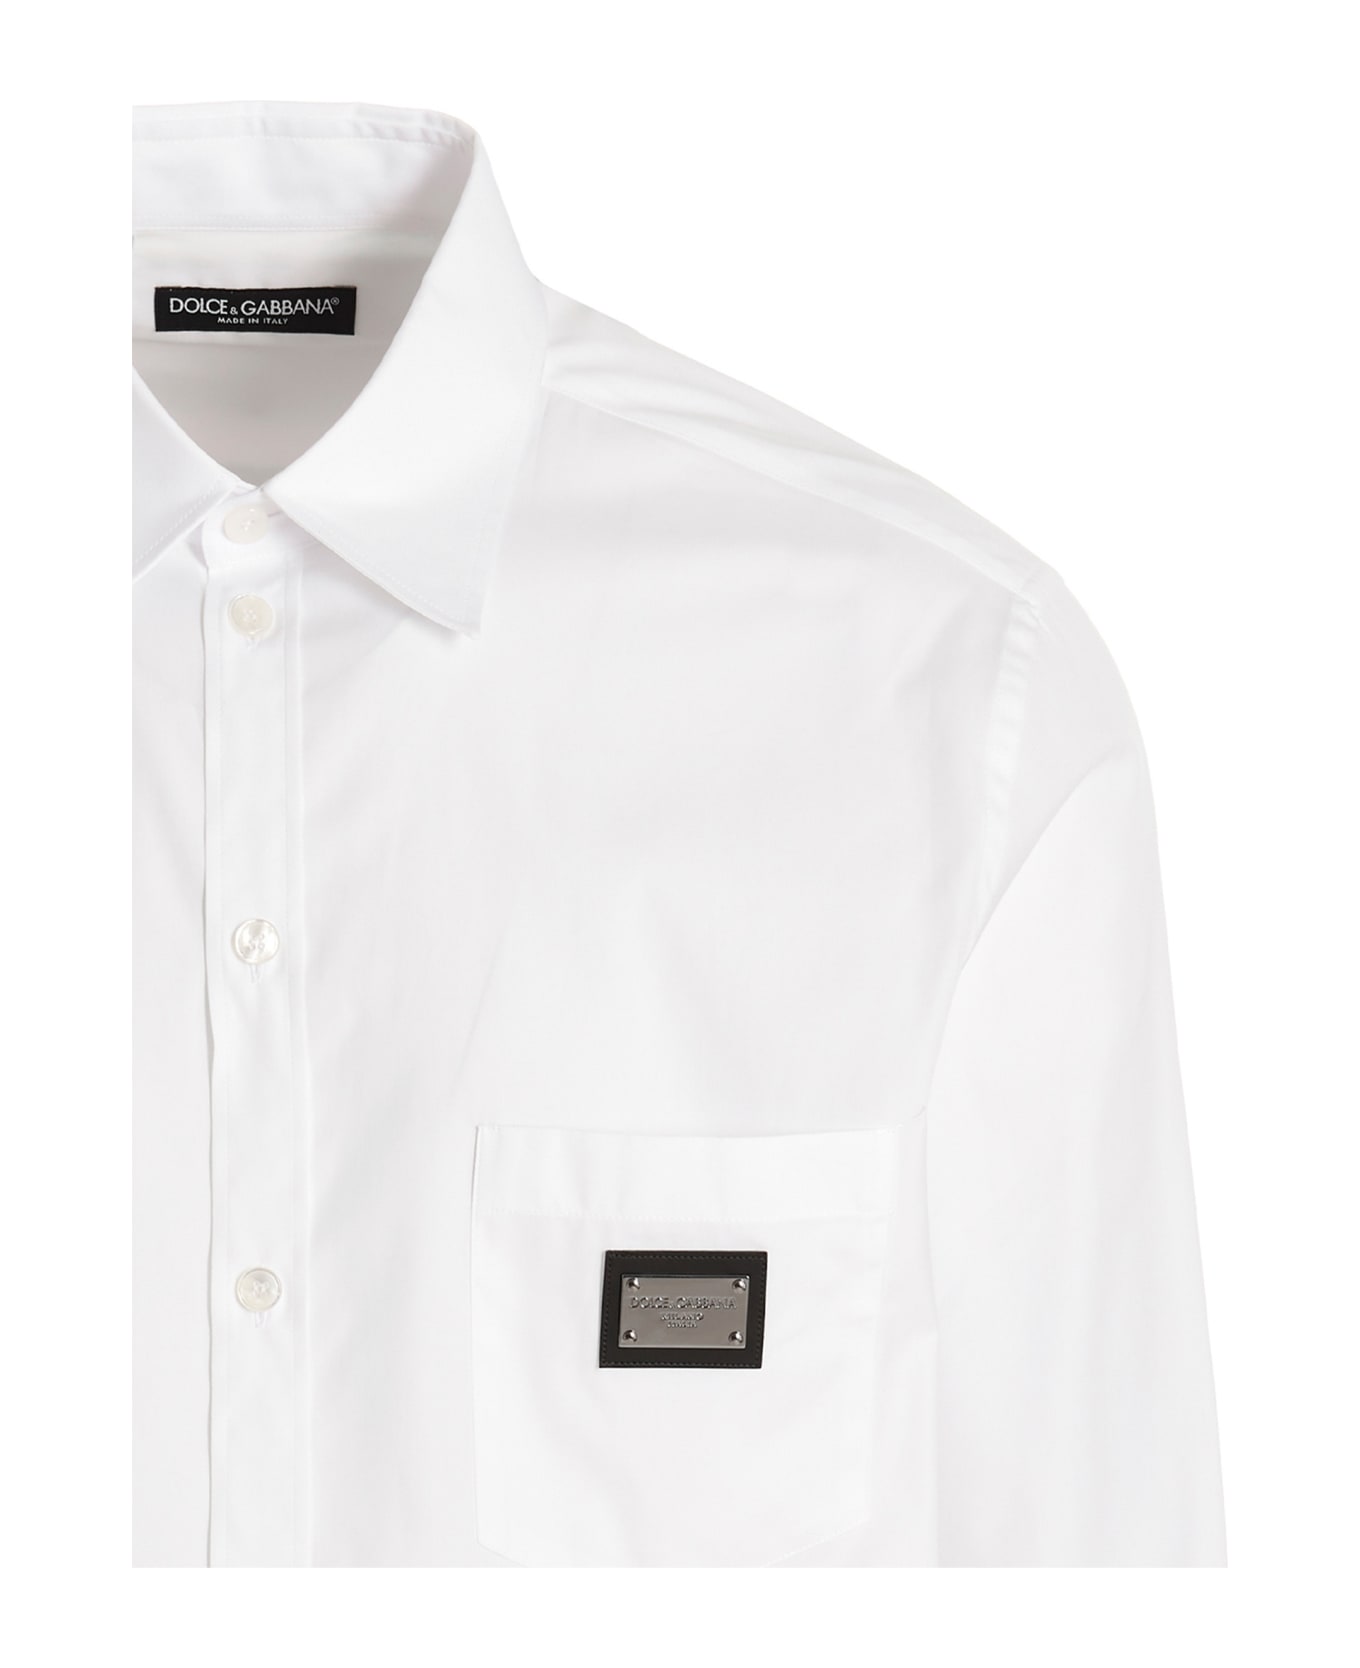 Dolce & Gabbana 'martini' Shirt - White